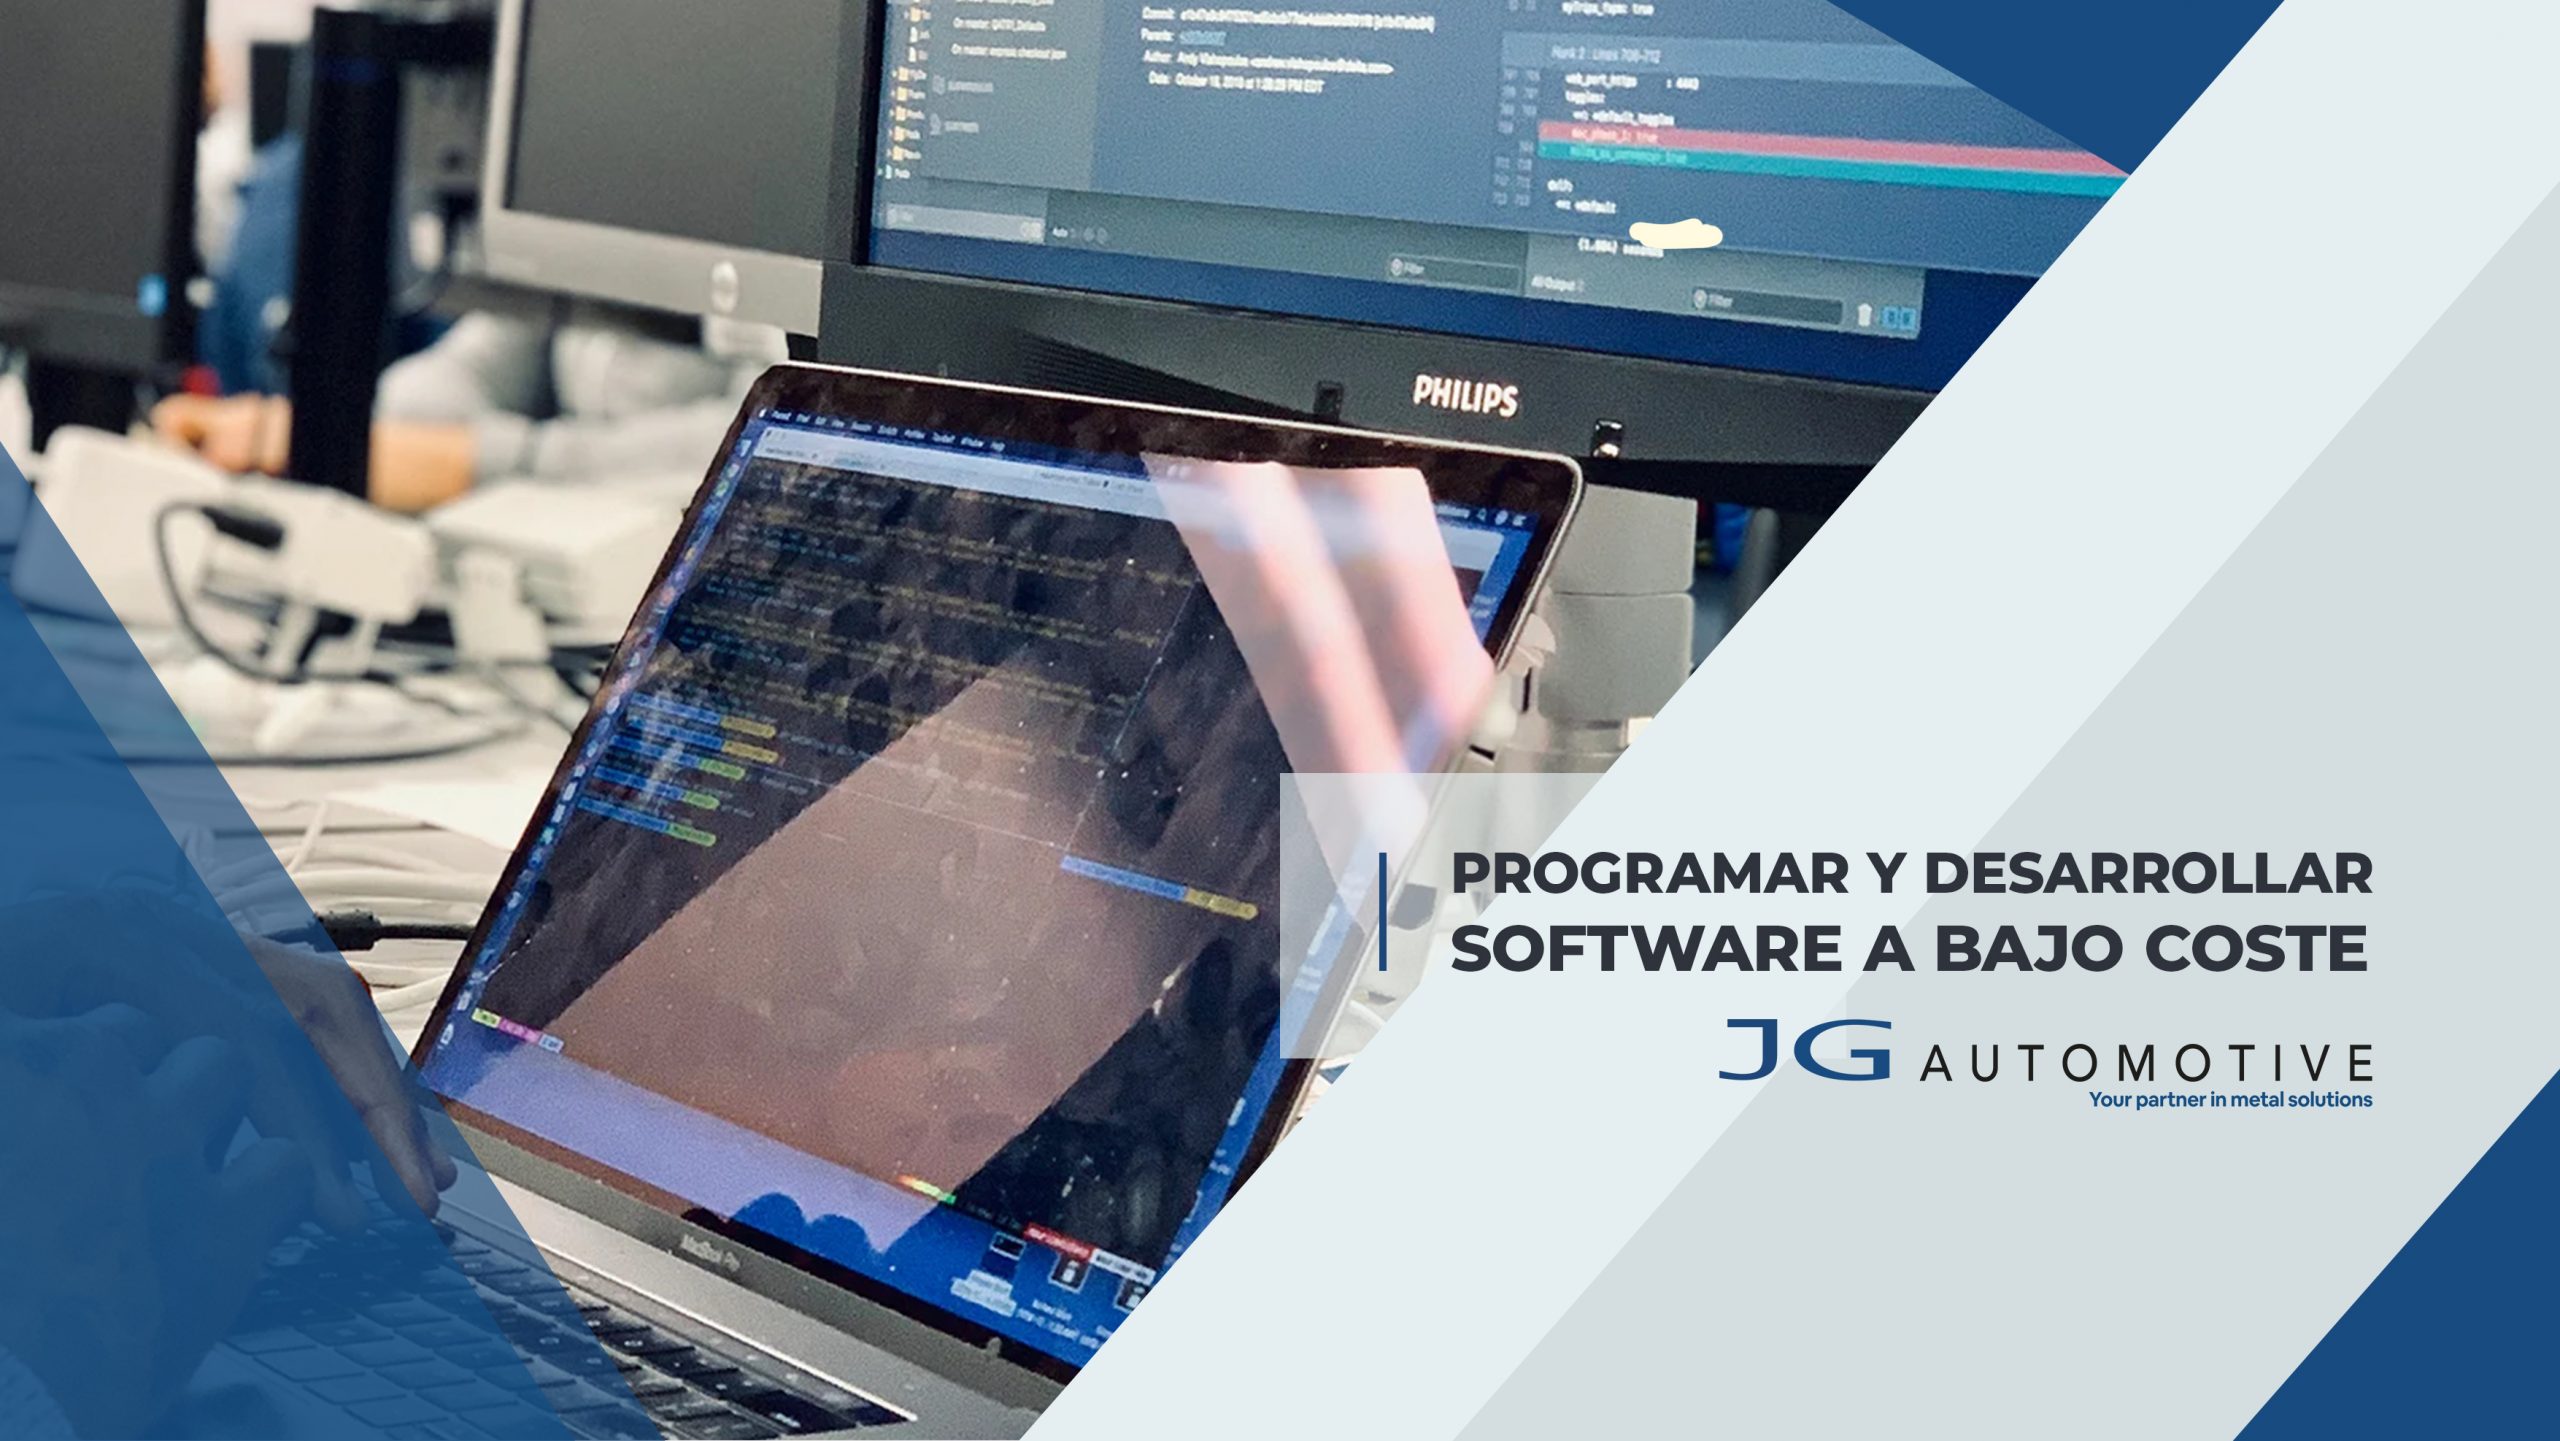 JG Automotive ofrece la capacidad de programar y desarrollar software a su medida a bajo coste